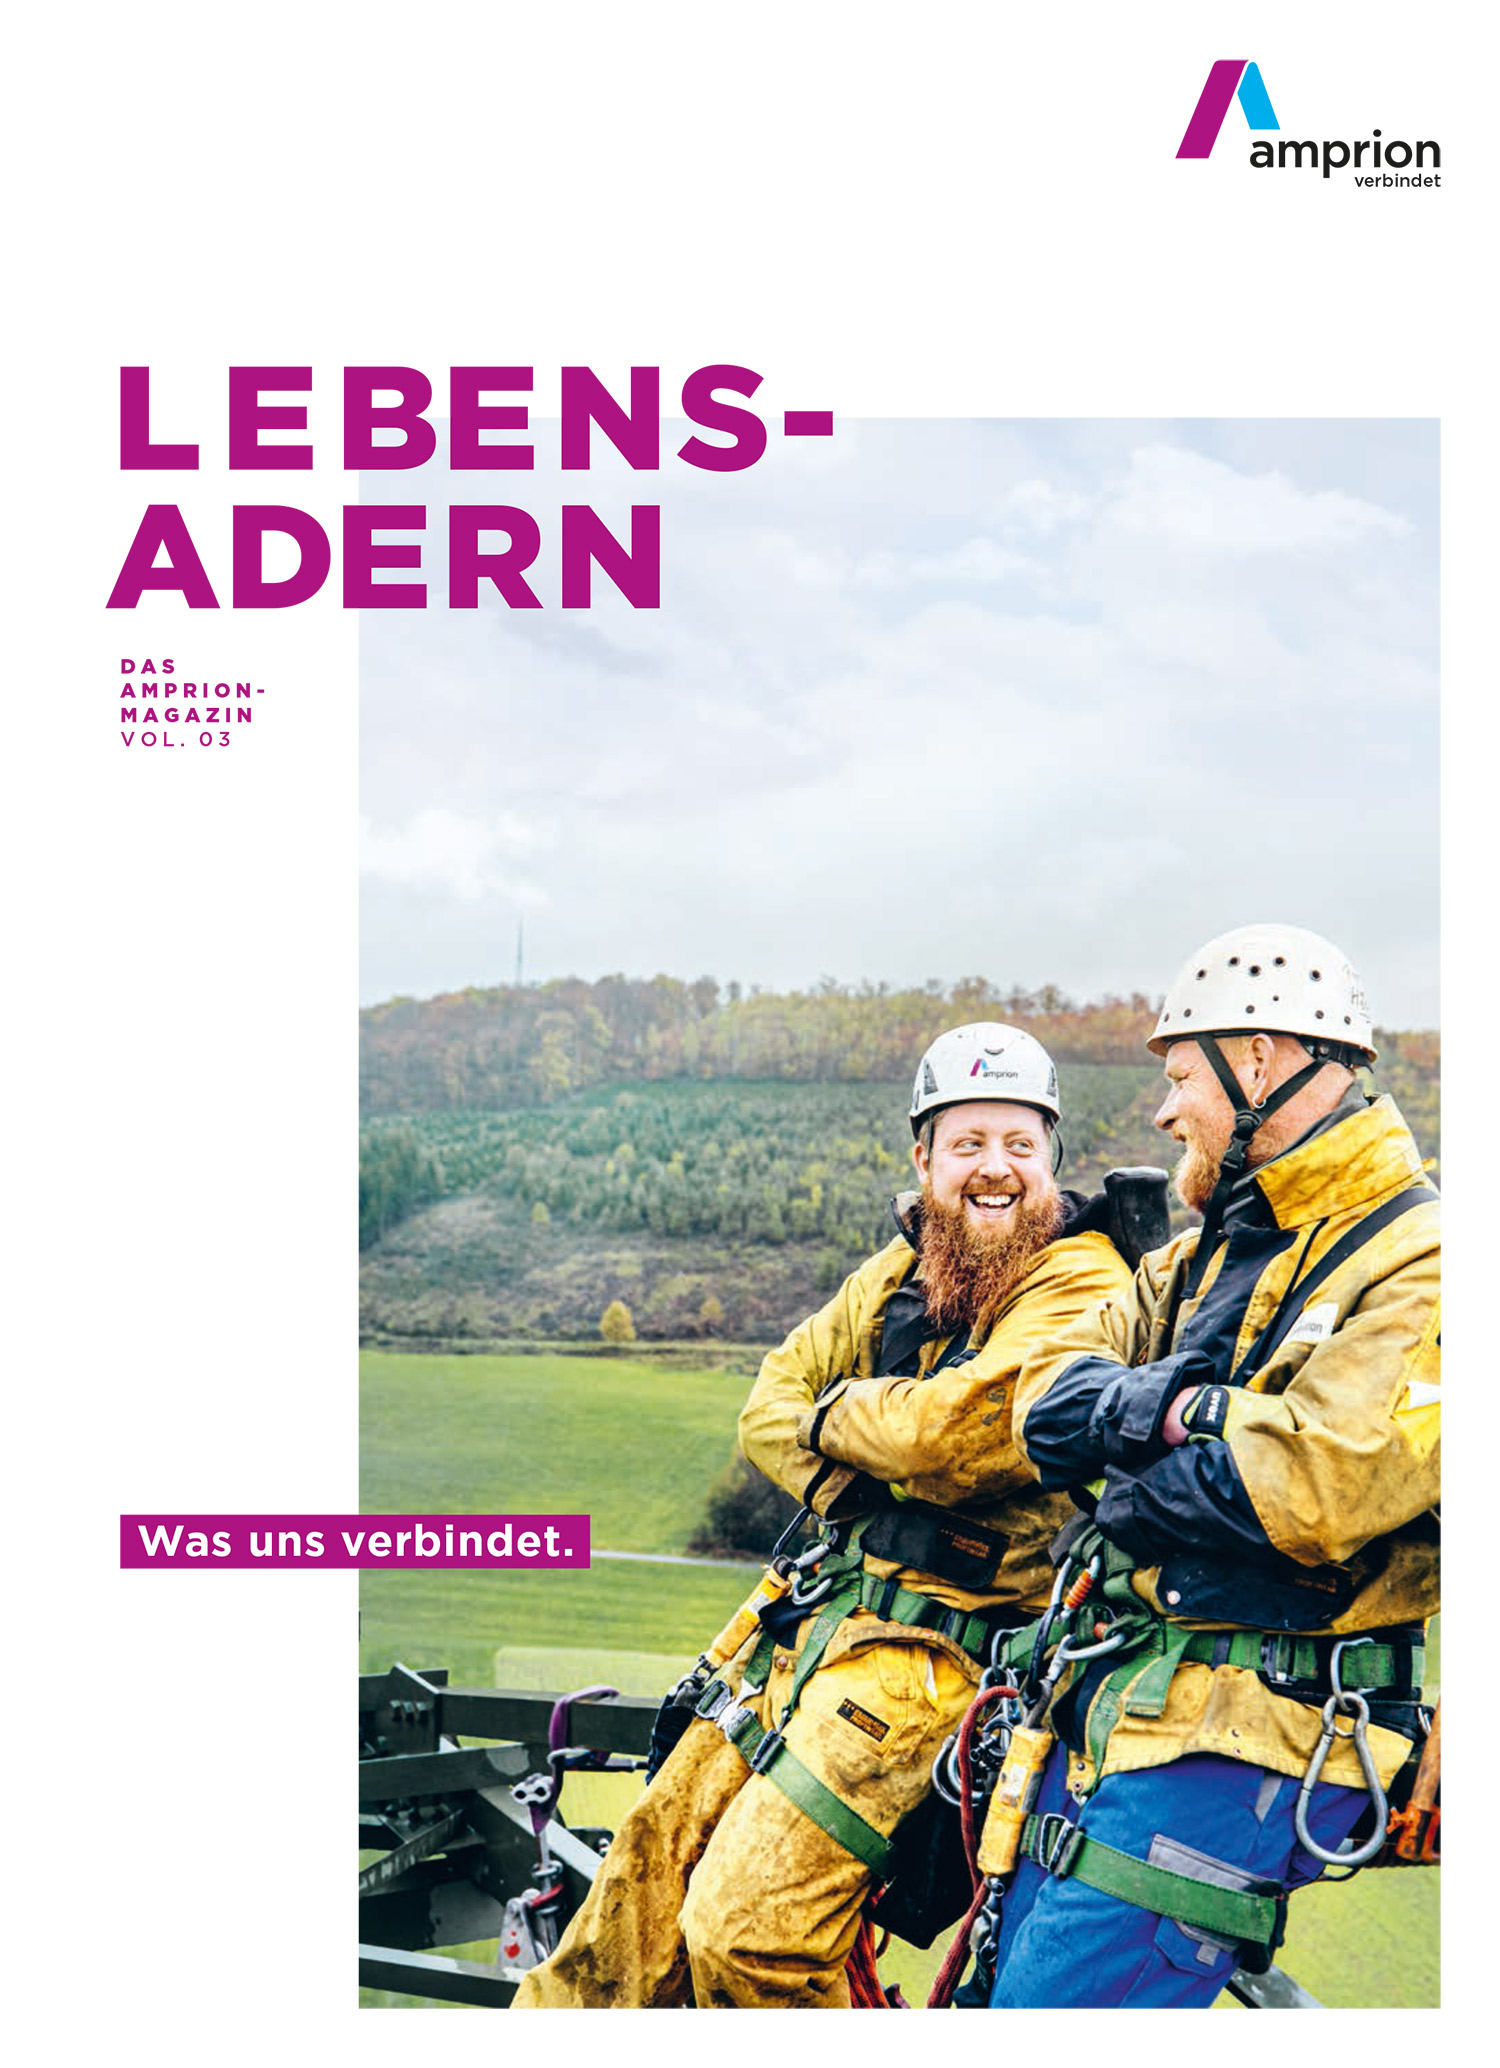 Amprion Geschäftsbericht 2019 Magazin Cover, Quelle: Amprion